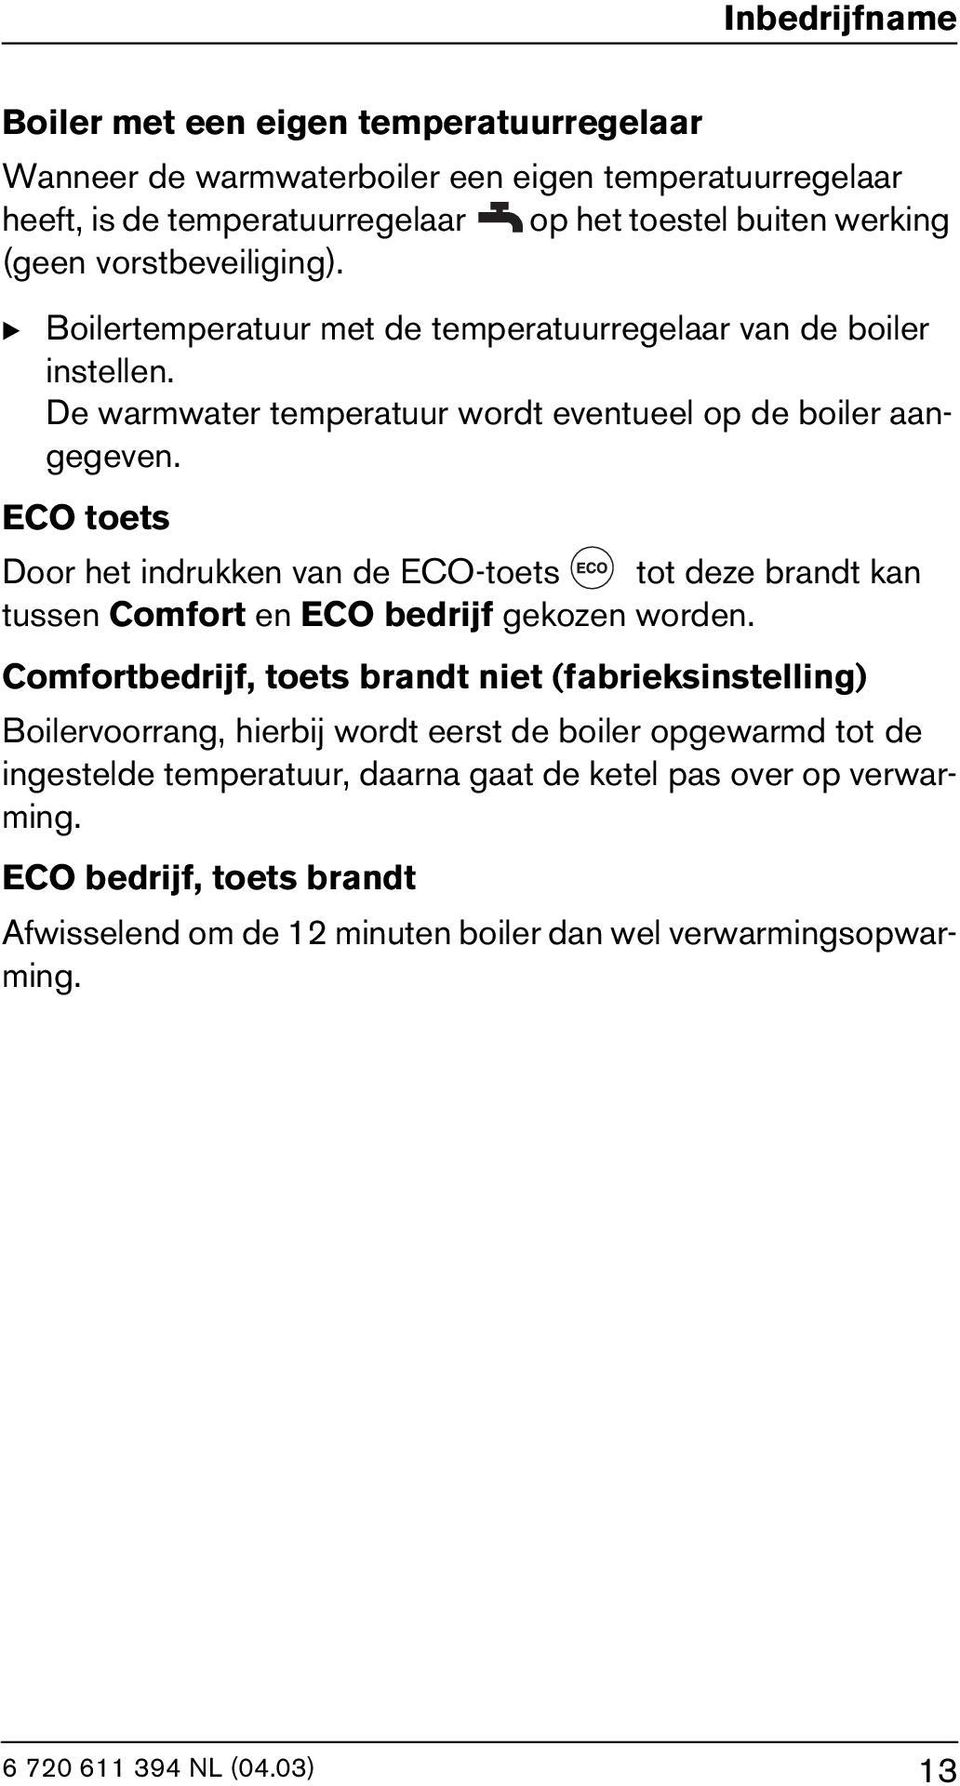 ECO toets Door het indrukken van de ECO-toets tot deze brandt kan tussen Comfort en ECO bedrijf gekozen worden.